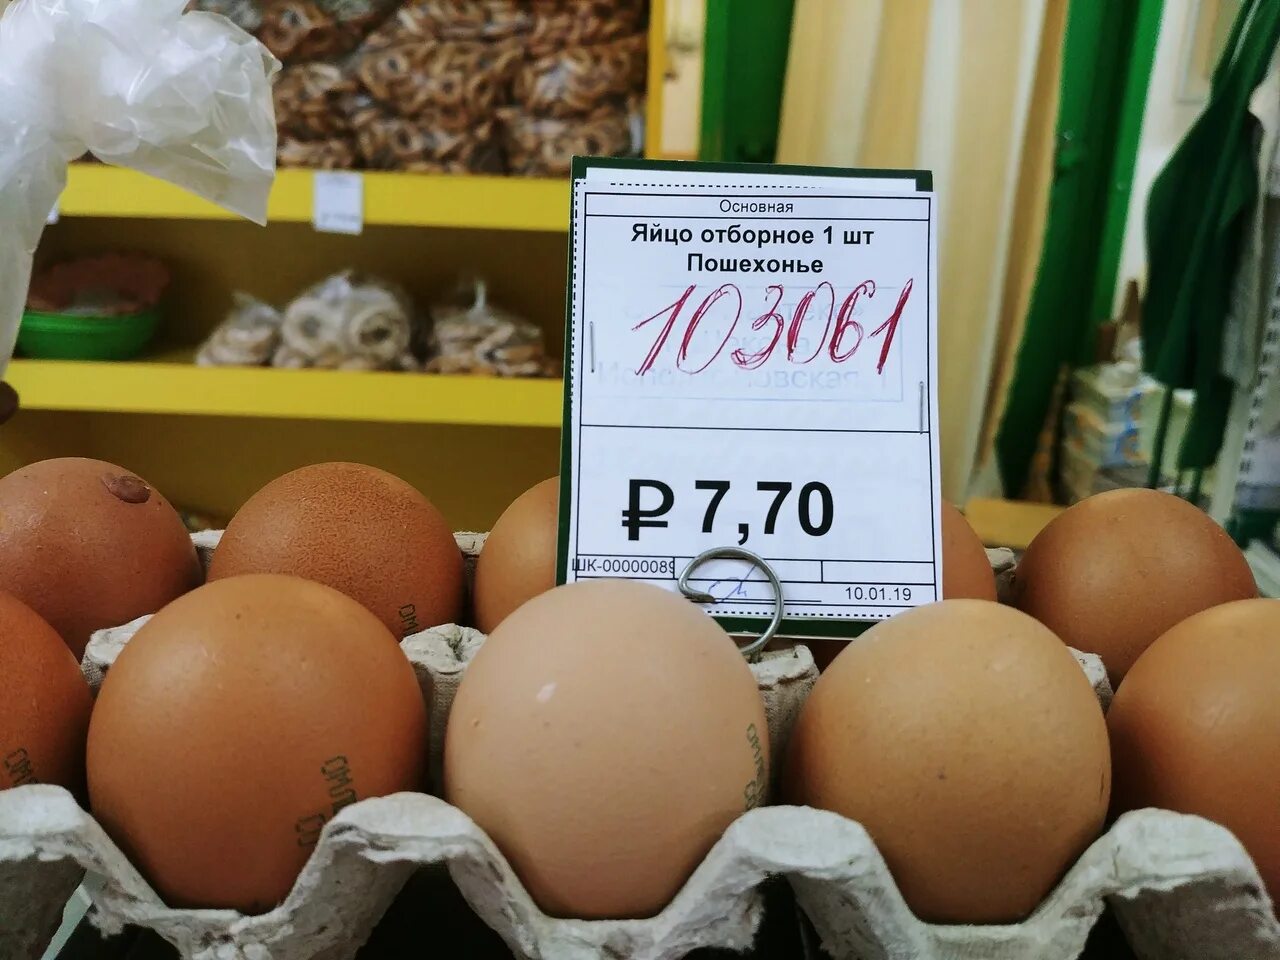 Яйца лучше купить. Яйца в магазине. Яички в магазине. Ценник на яйца. Яйца на прилавке.